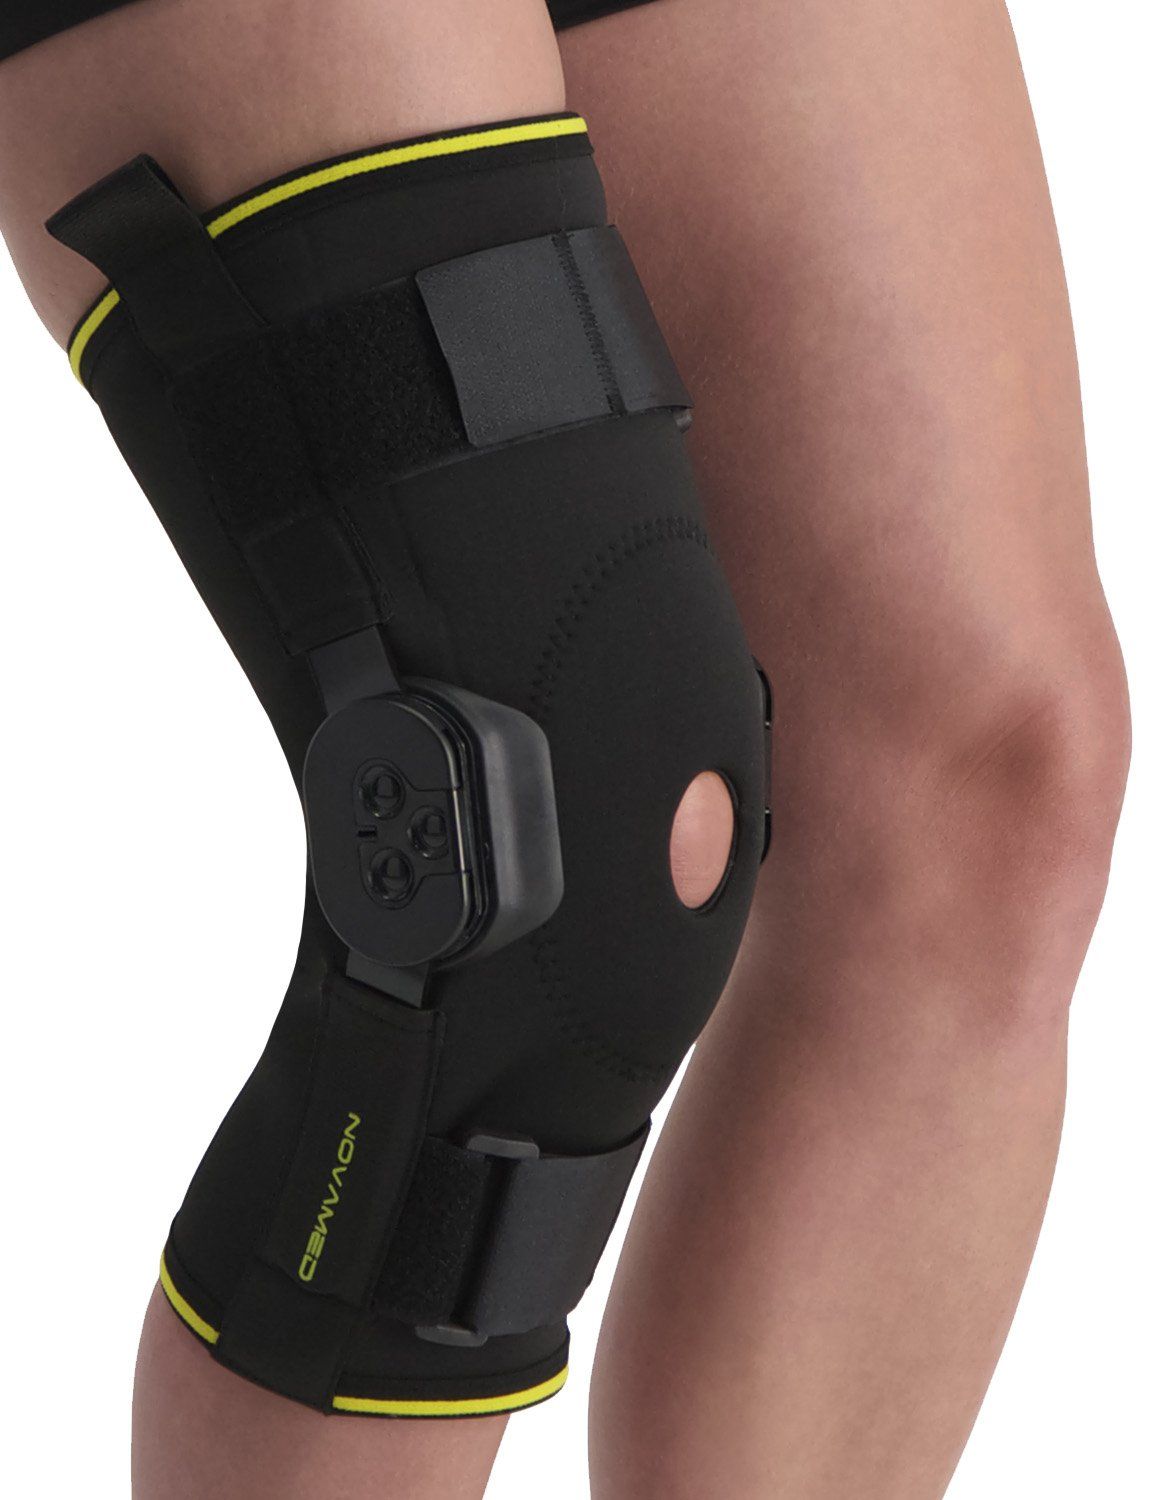 novamed knee support with adjustable hinges for sale